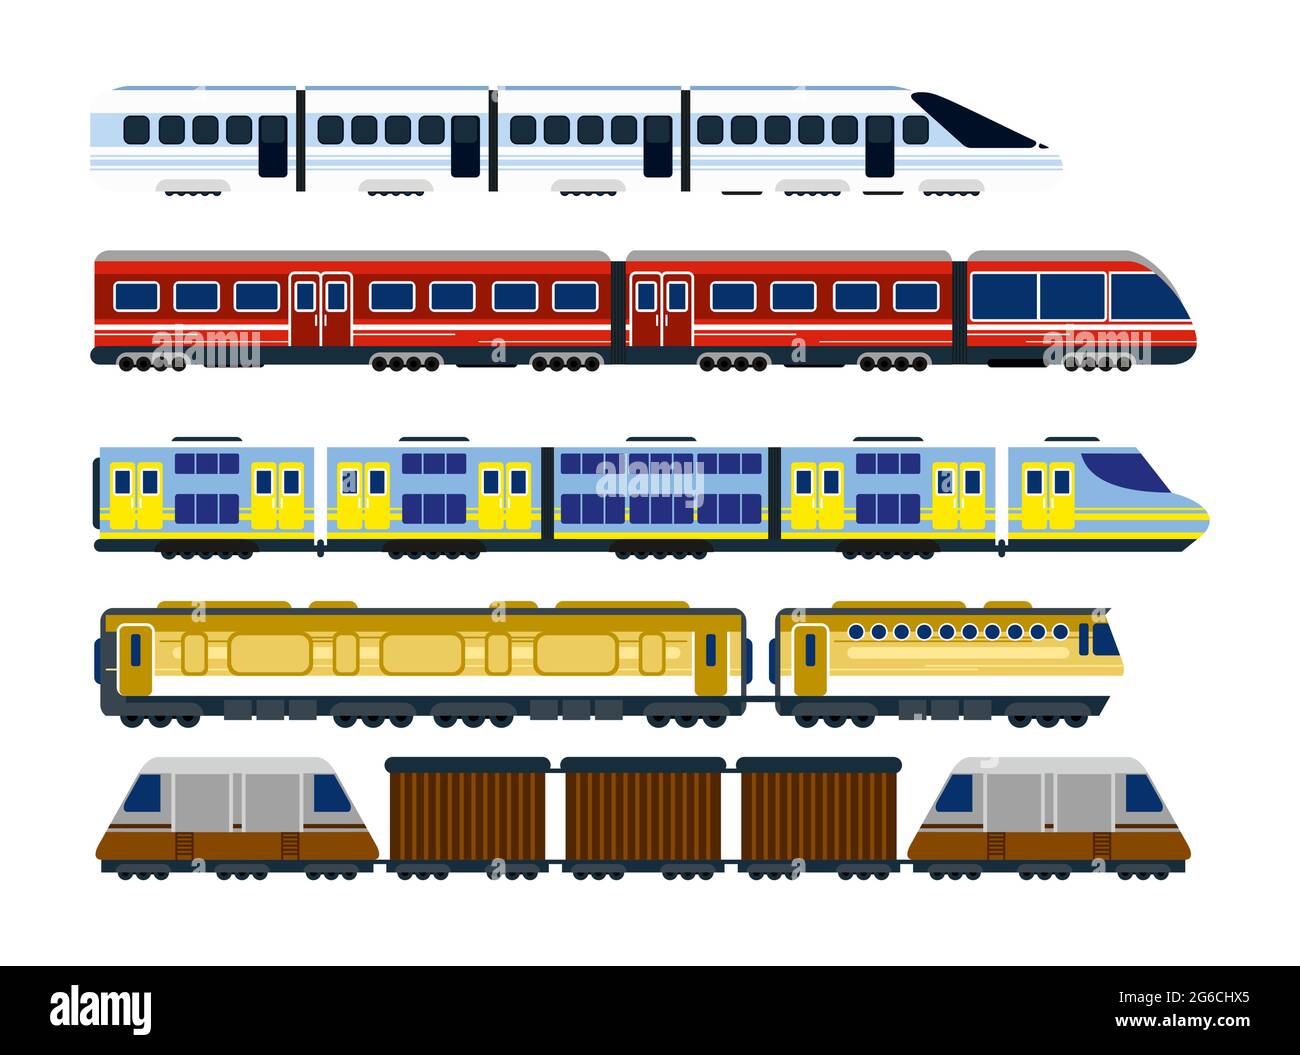 Illustrazione vettoriale di una collezione di locomotive ferroviarie moderne, di carri passeggeri e di treni di velocità in stile cartoon piano. Illustrazione Vettoriale